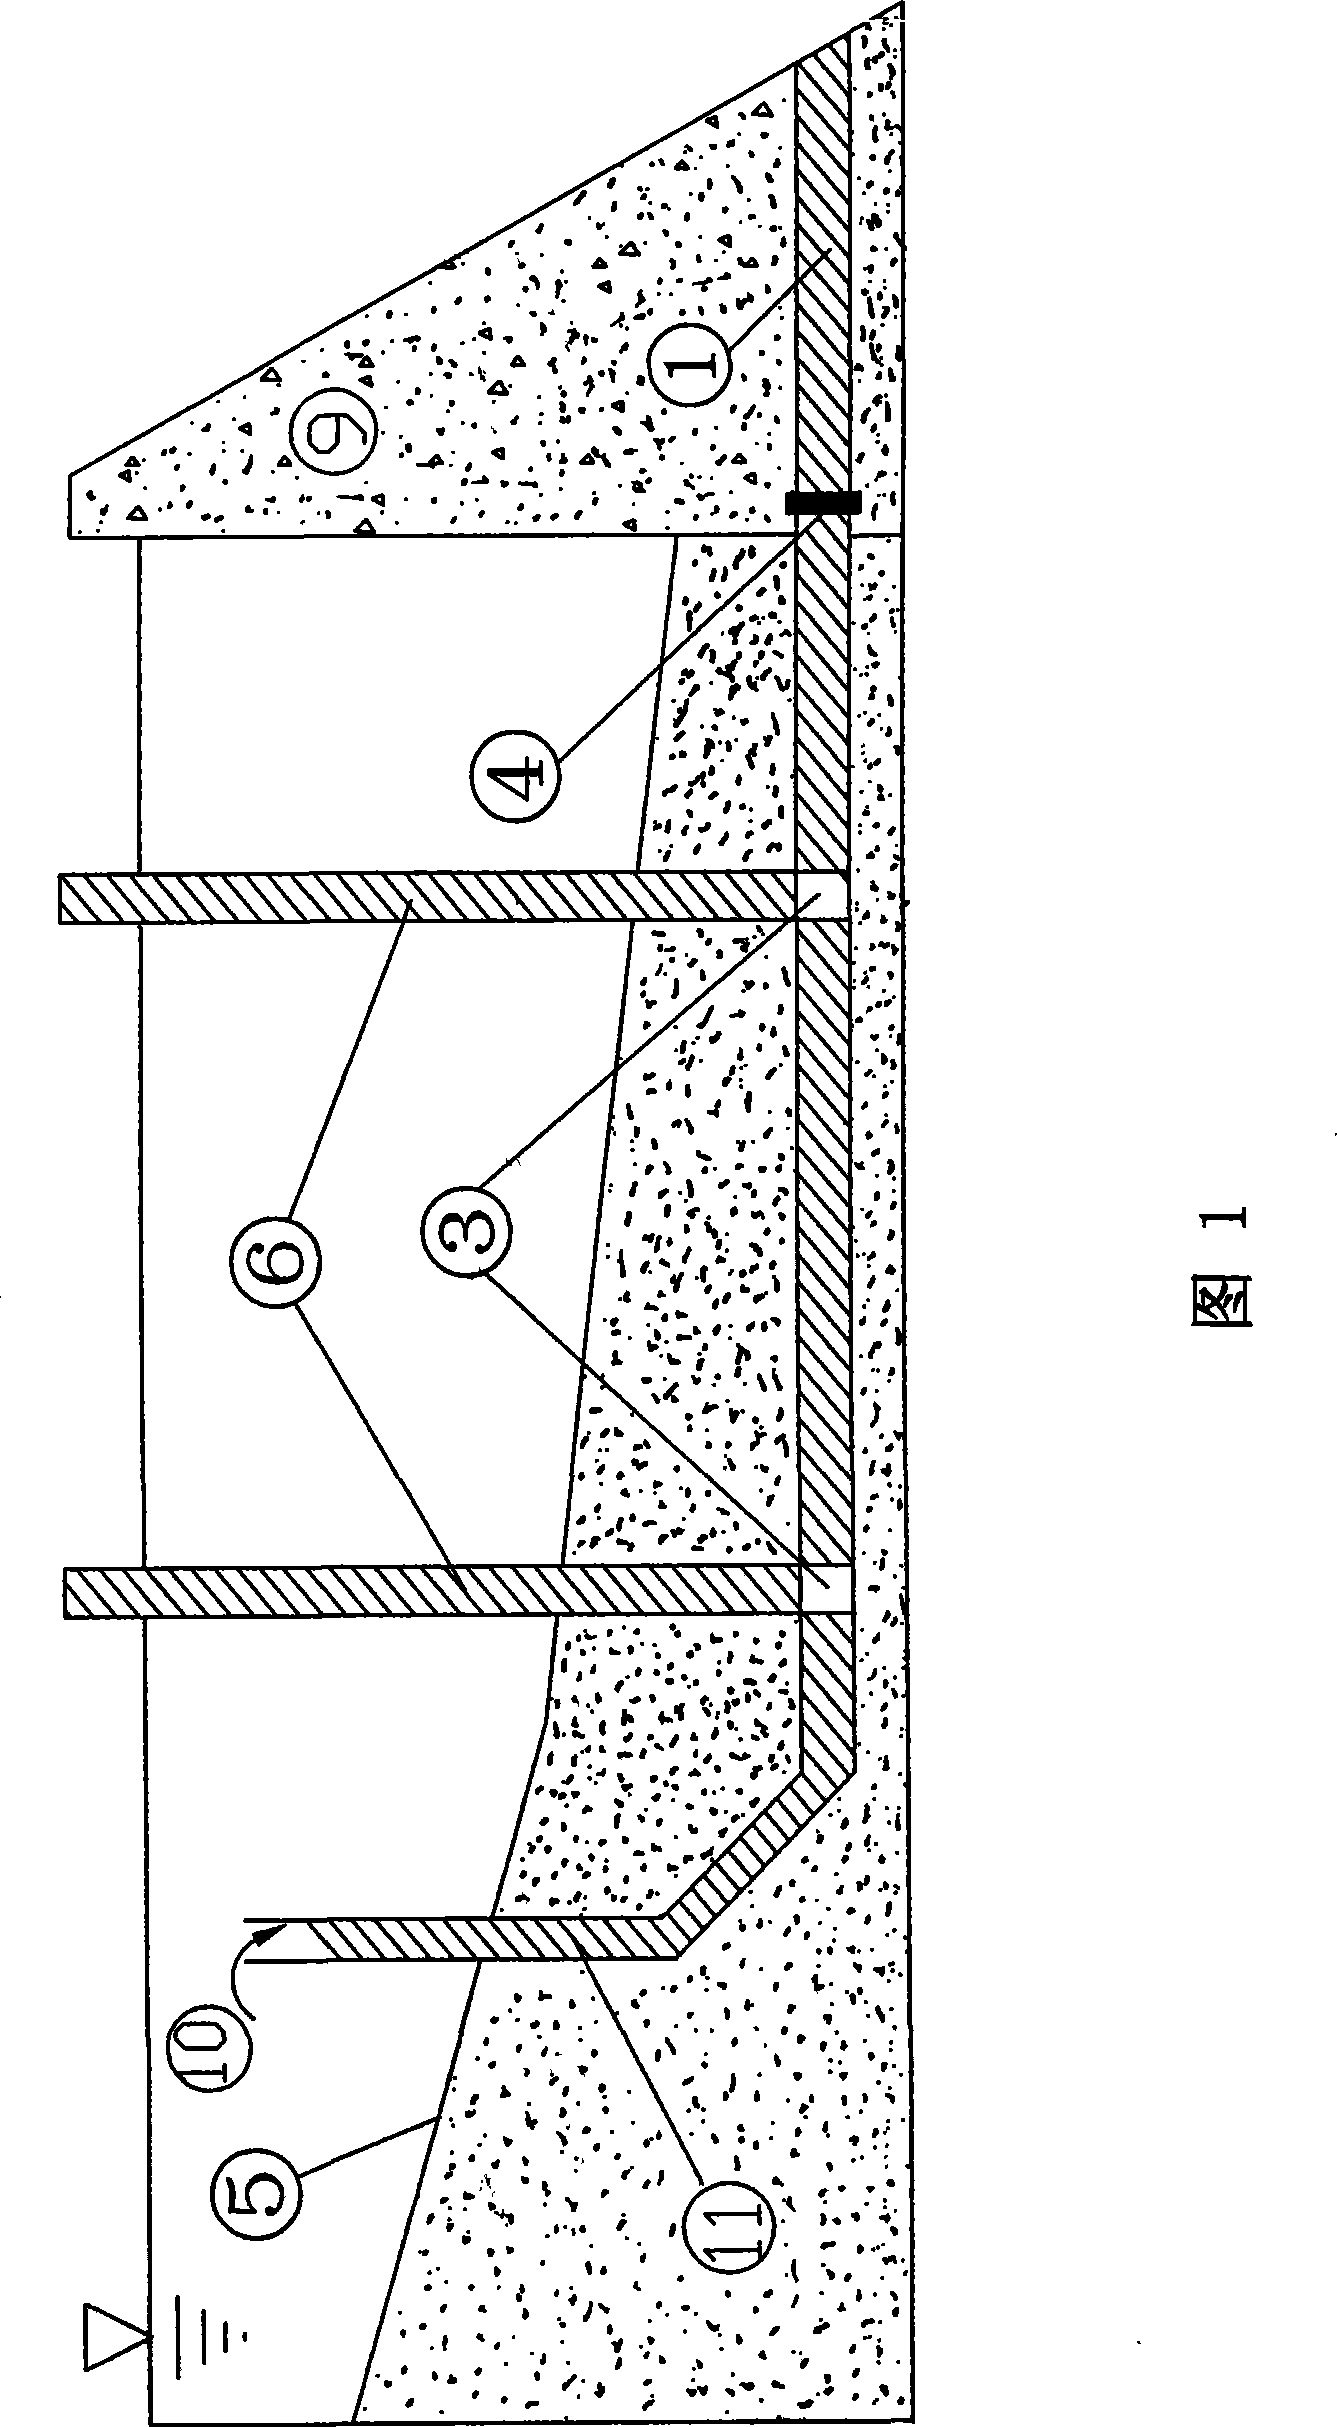 Hydraulic arrangement mode sediment ejection structure